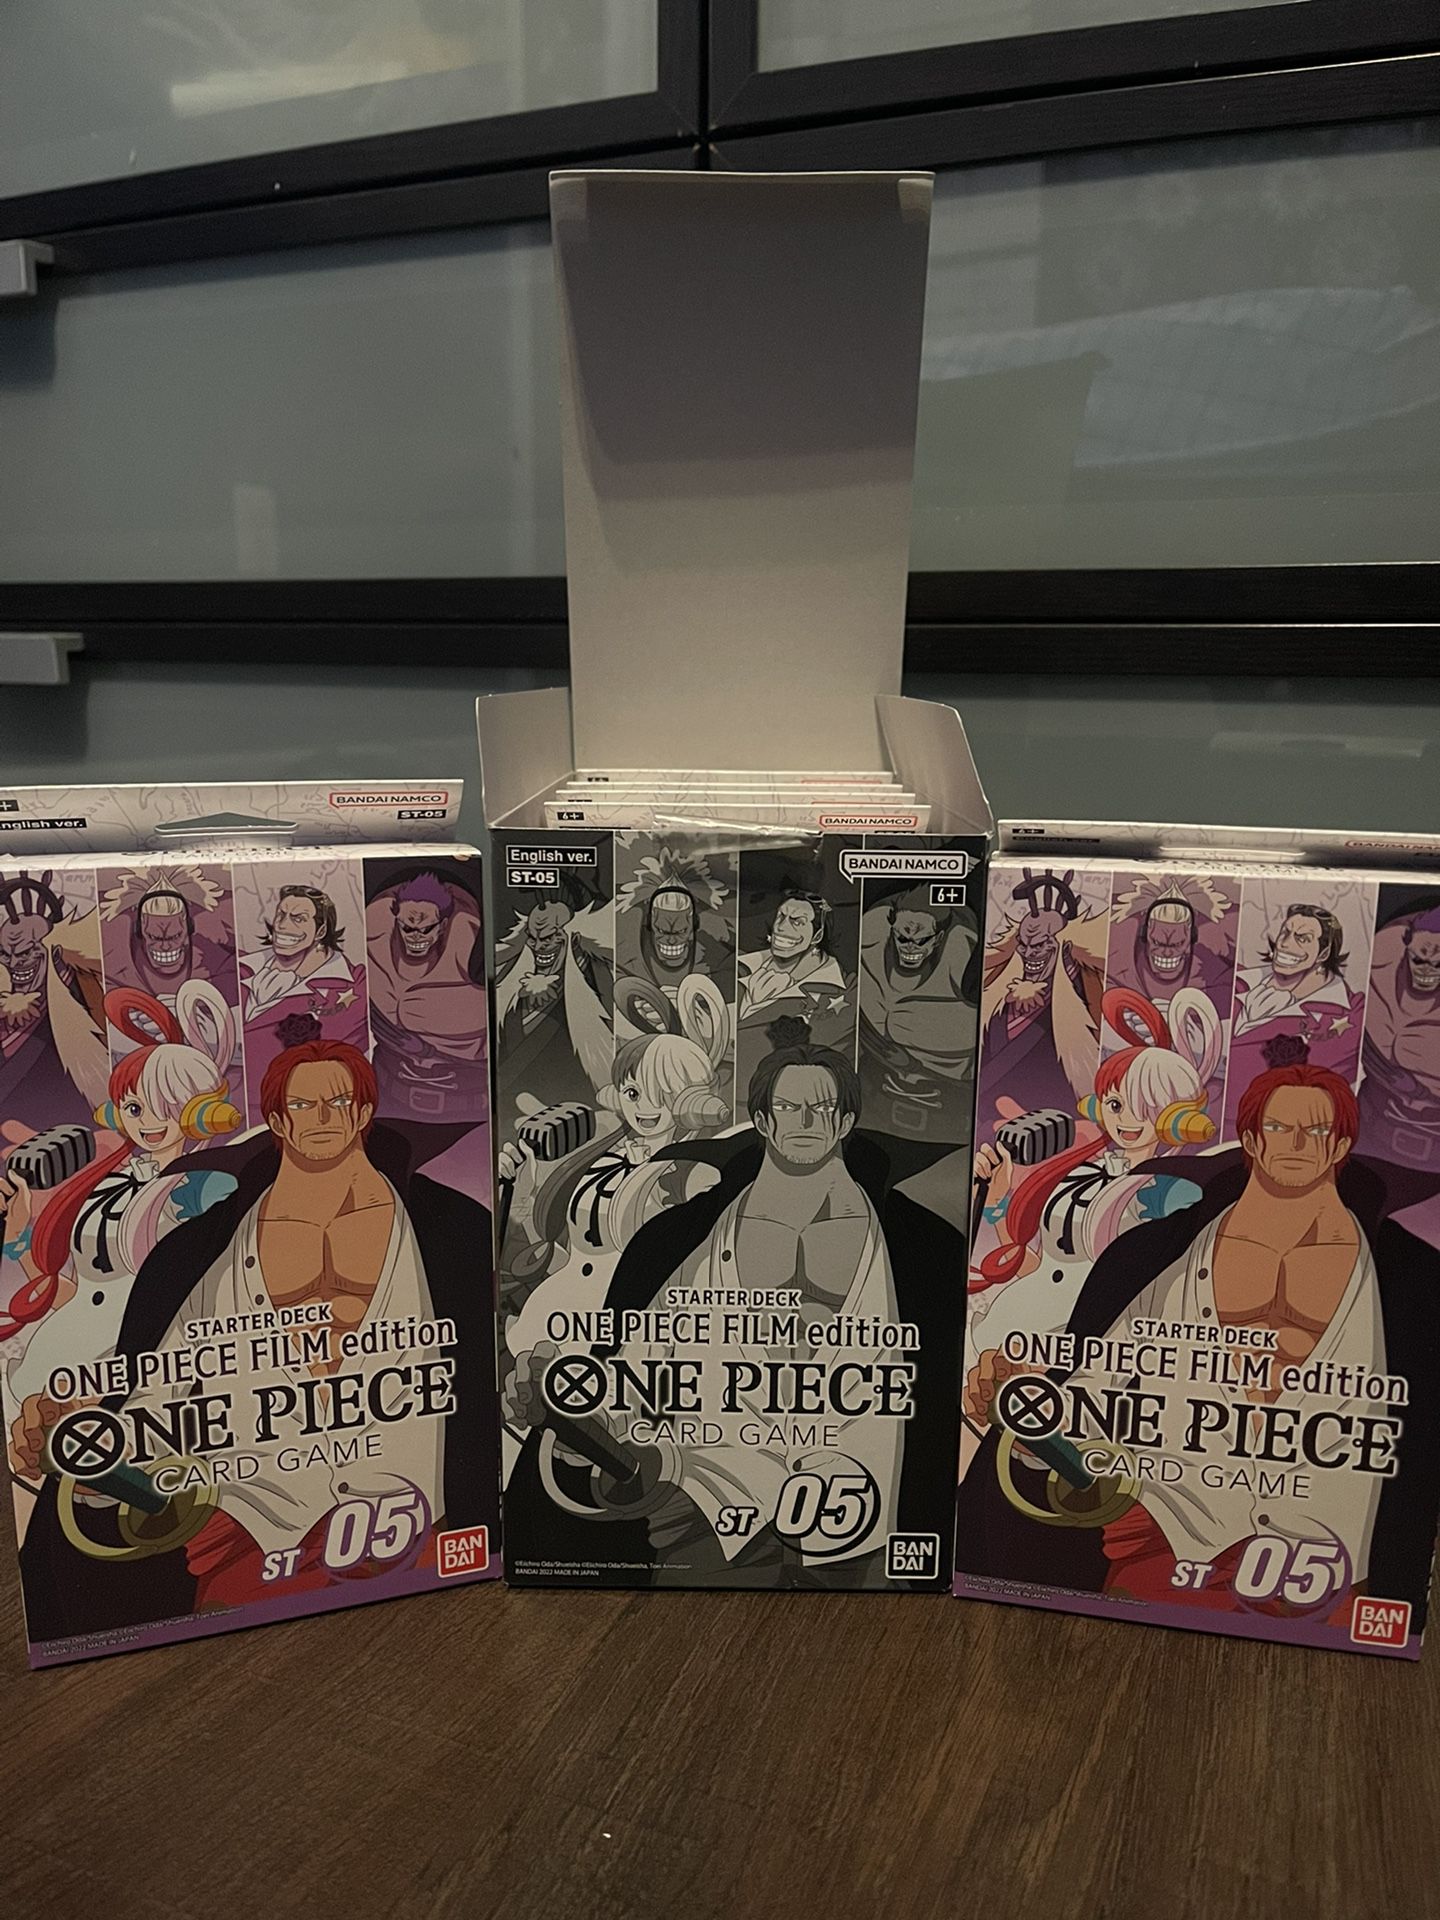 One Piece Film Edition Starter Deck ST 05 2X